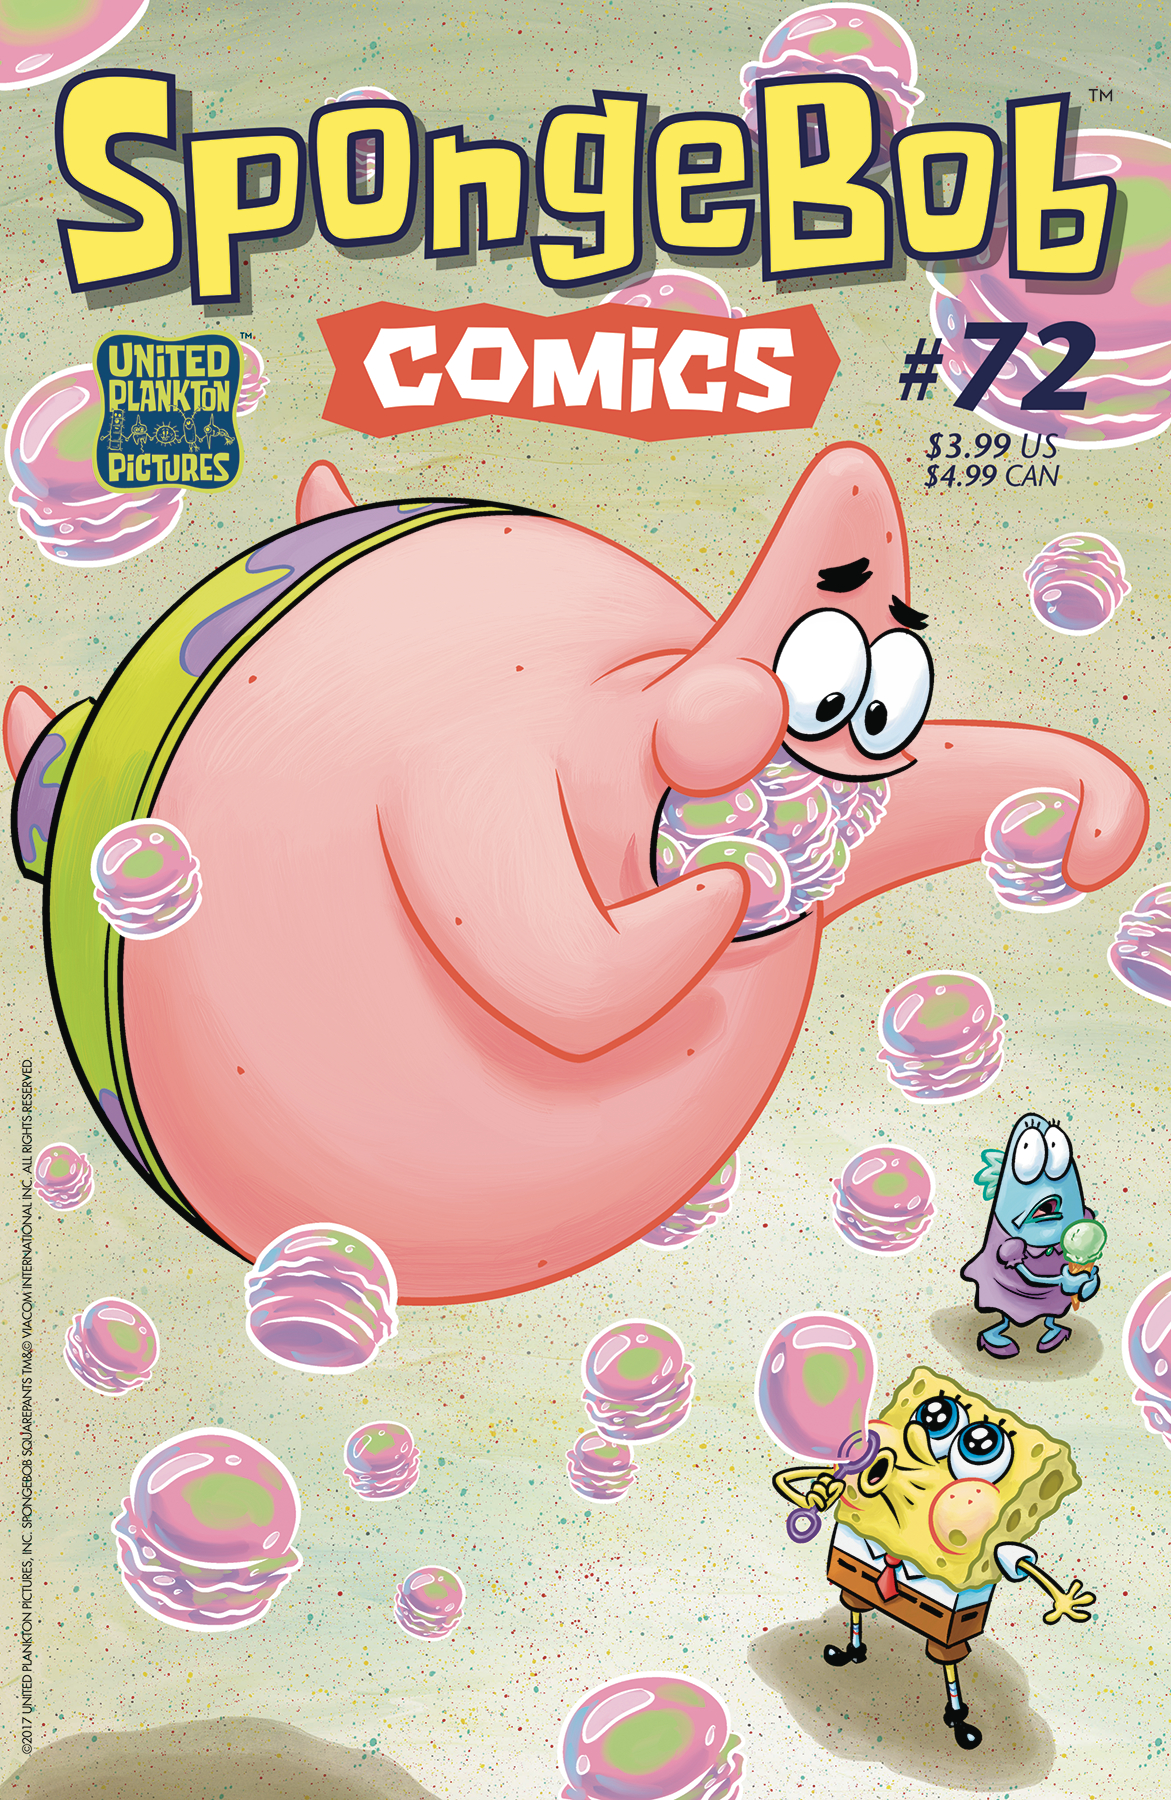 SPONGEBOB COMICS #72